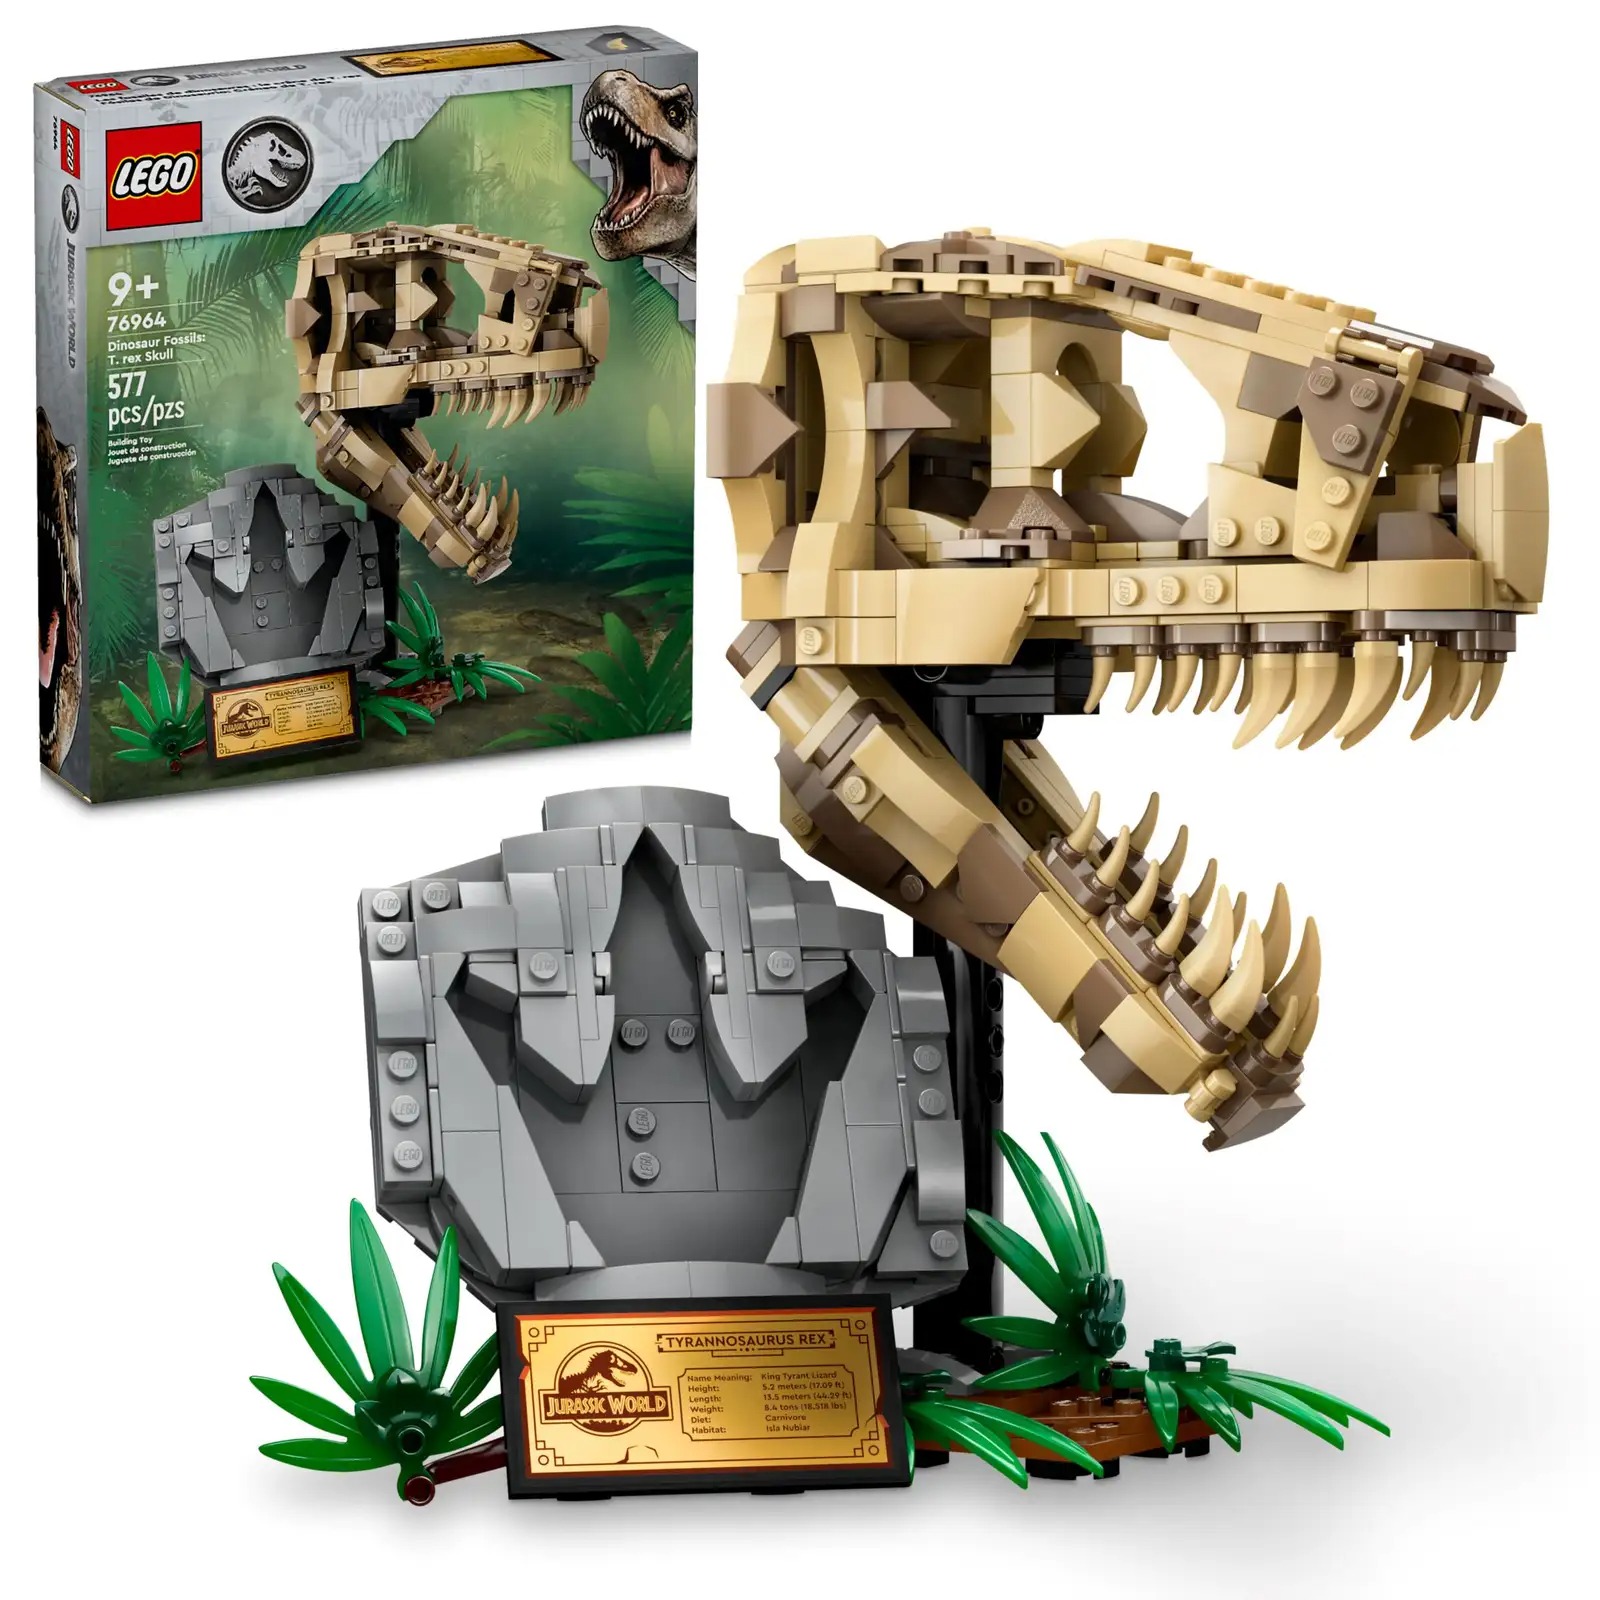 LEGO Jurassic World Dinosaur Fossils: T. rex Skull Set 76964